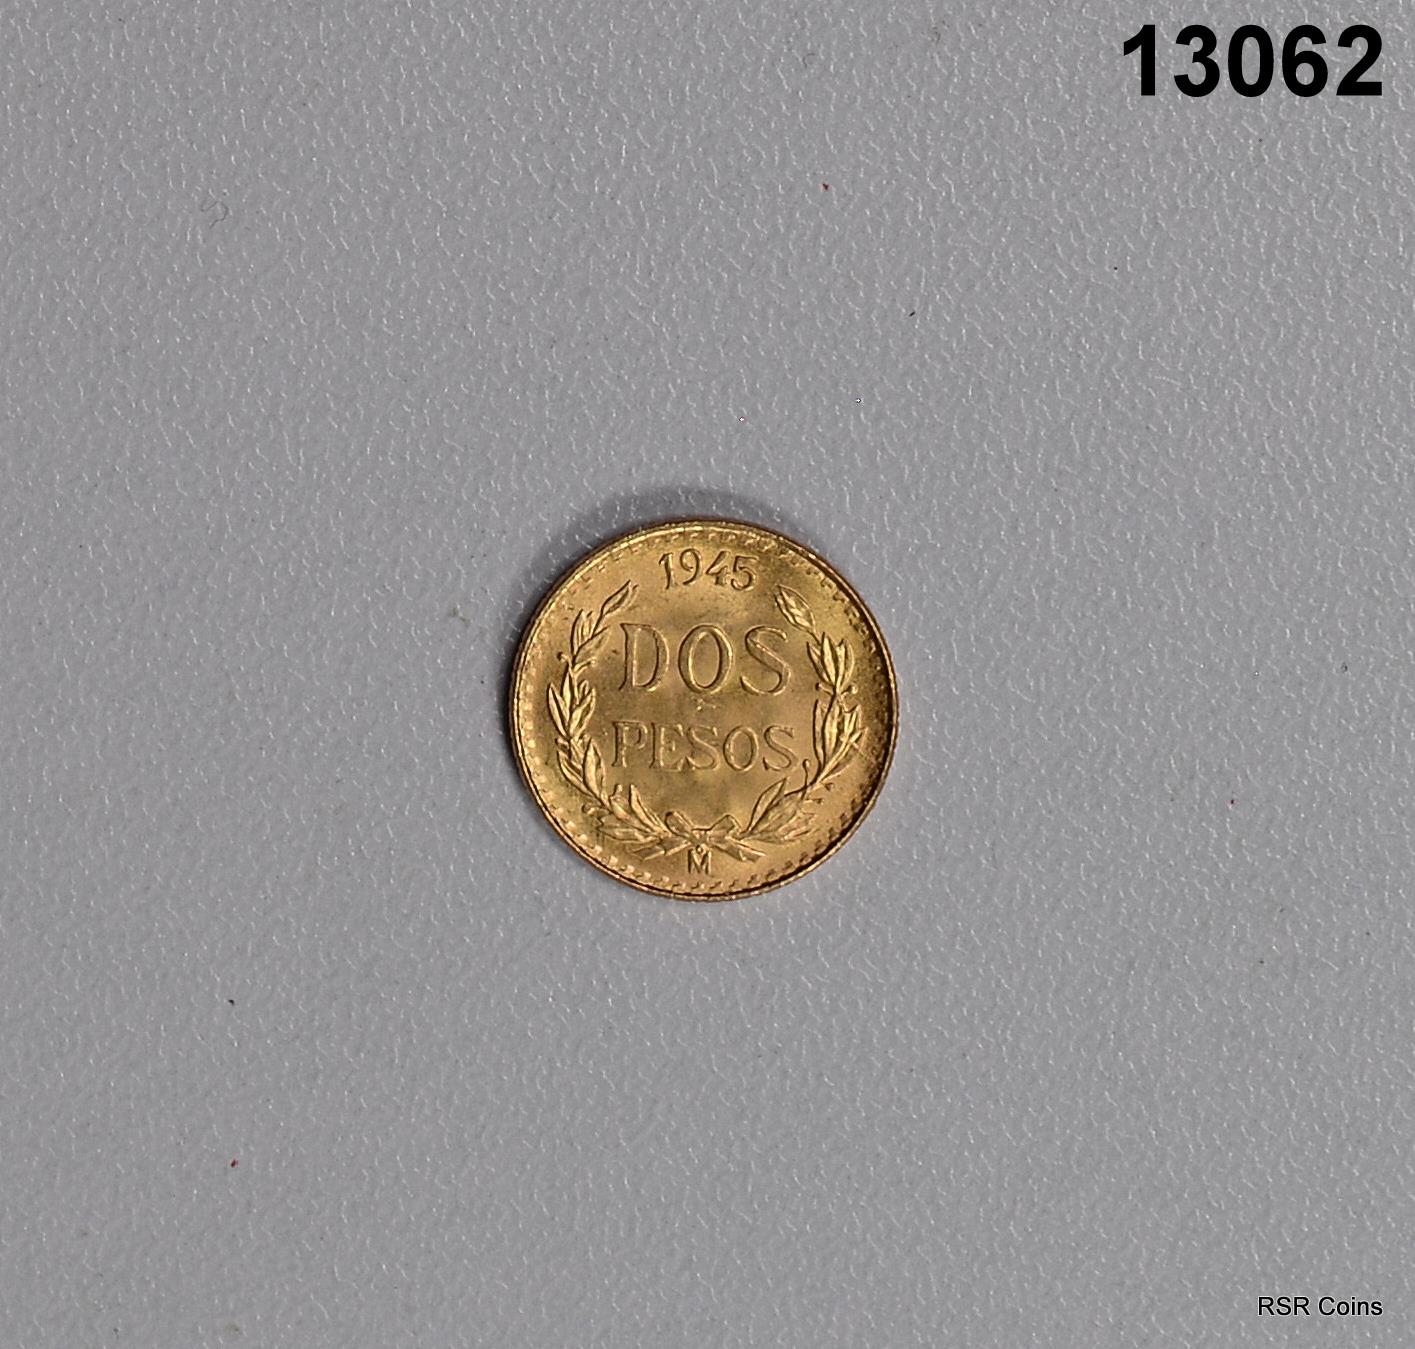 1945 MEXICAN 2 PESOS GOLD COIN .0482 OZ CHOICE BU! #13062